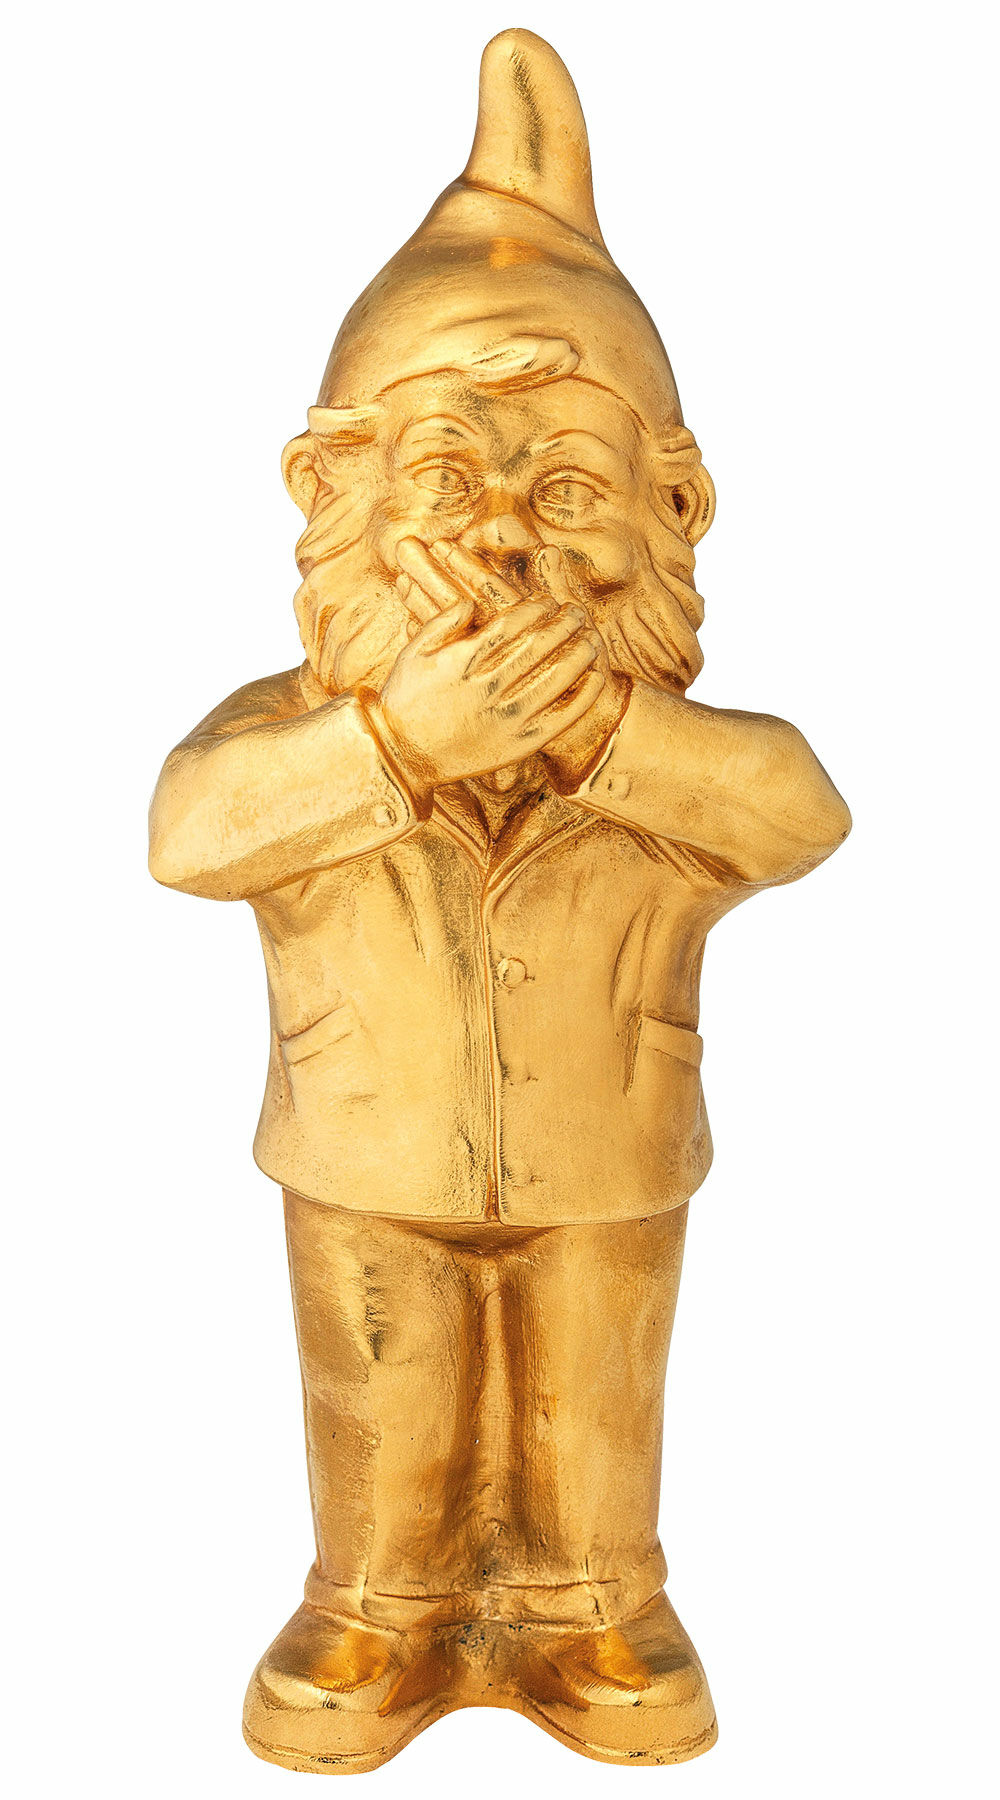 Skulptur "Geheimnisträger - Nichts sagen", Version vergoldet von Ottmar Hörl